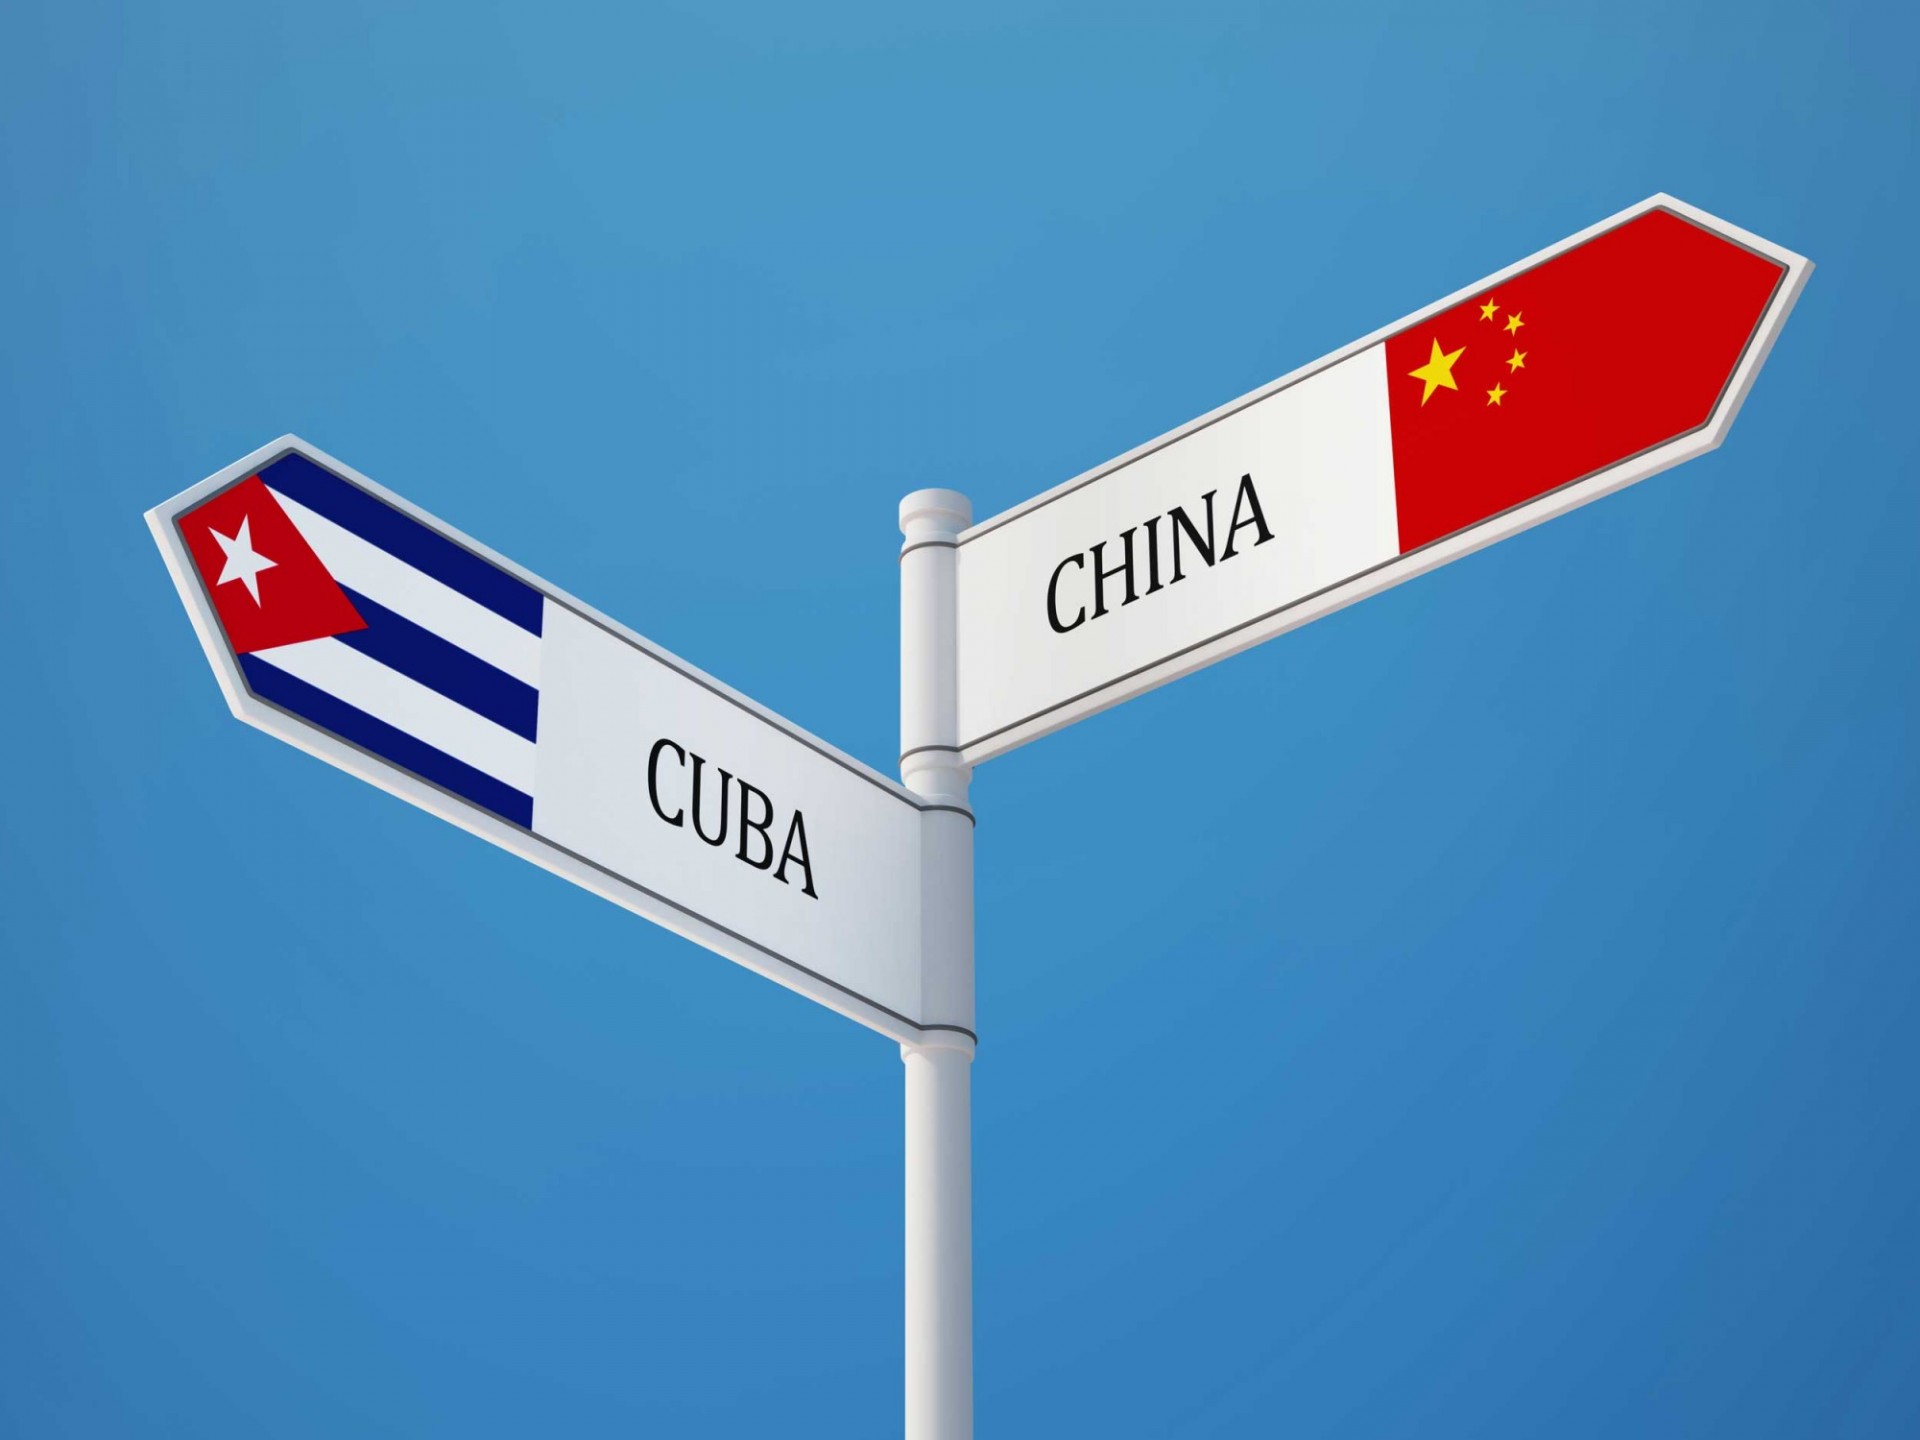 señales con las banderas cubanas y chinas apuntando en diferente direcciones